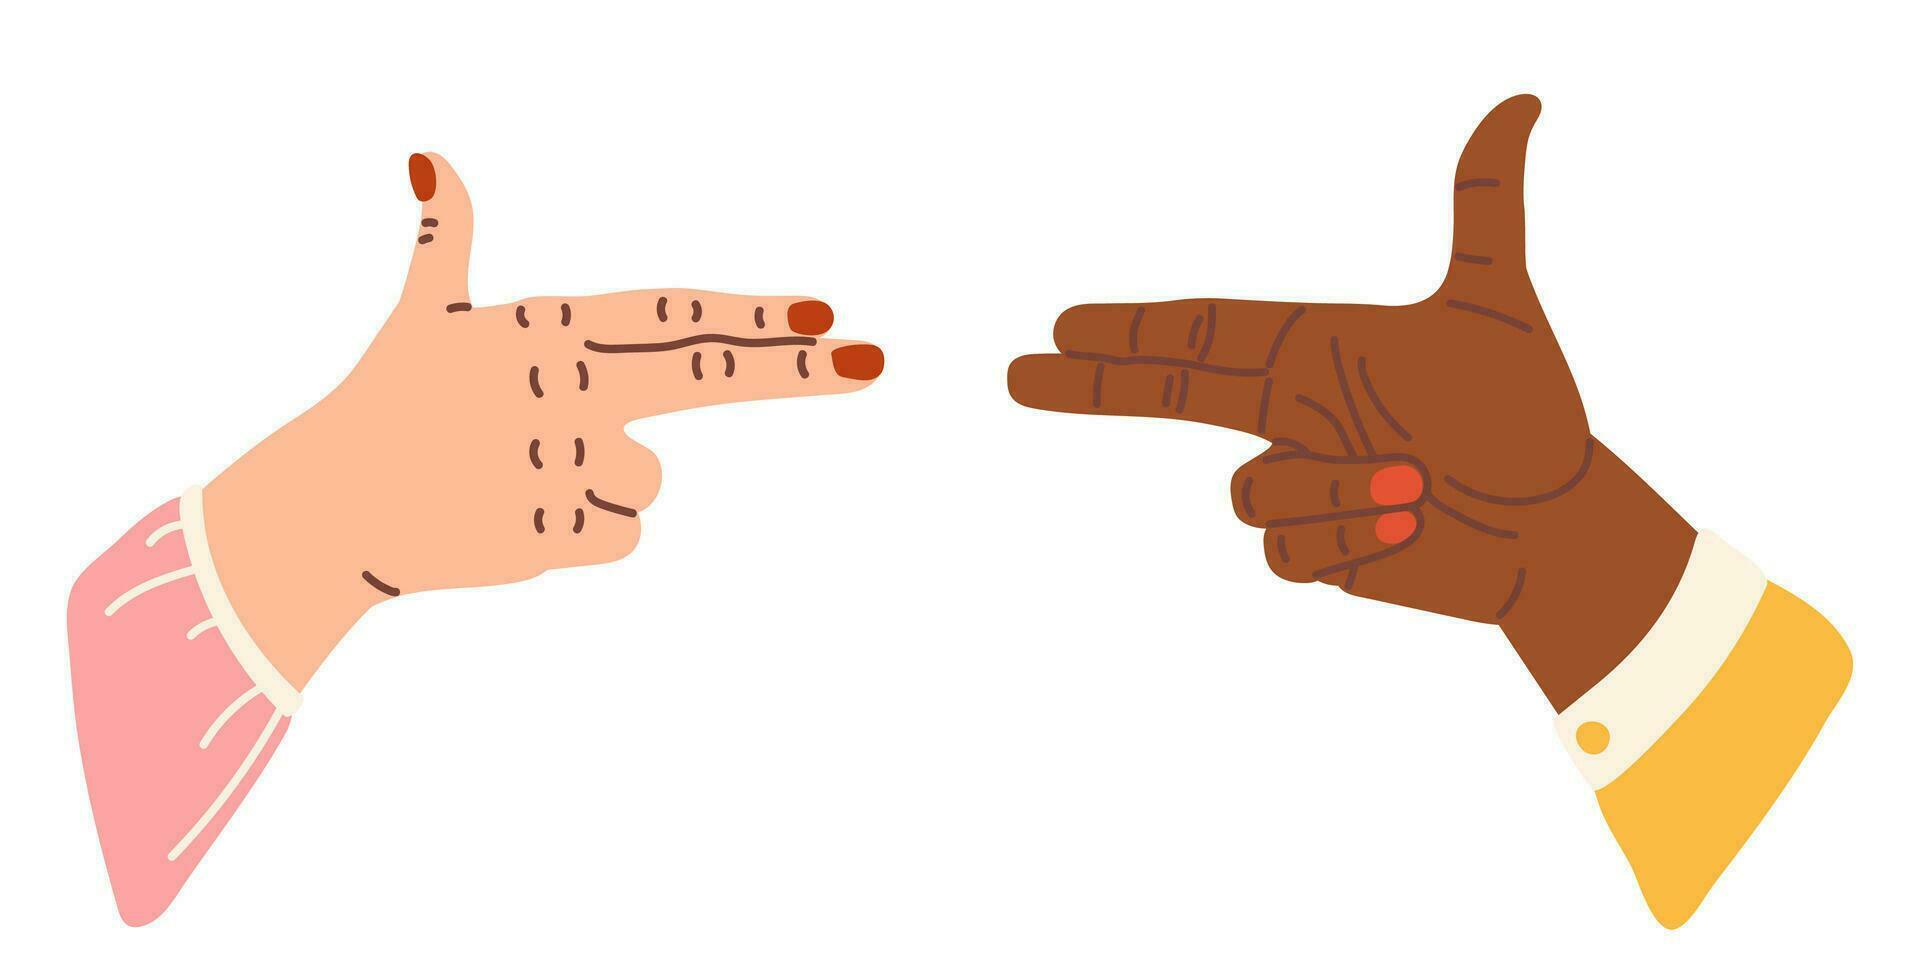 två händer pistol tecken vektor tecknad serie illustration isolerat på vit. pistol pistol finger gest. mördare gest. smäll eller skytte från imaginär vapen, kommunikation